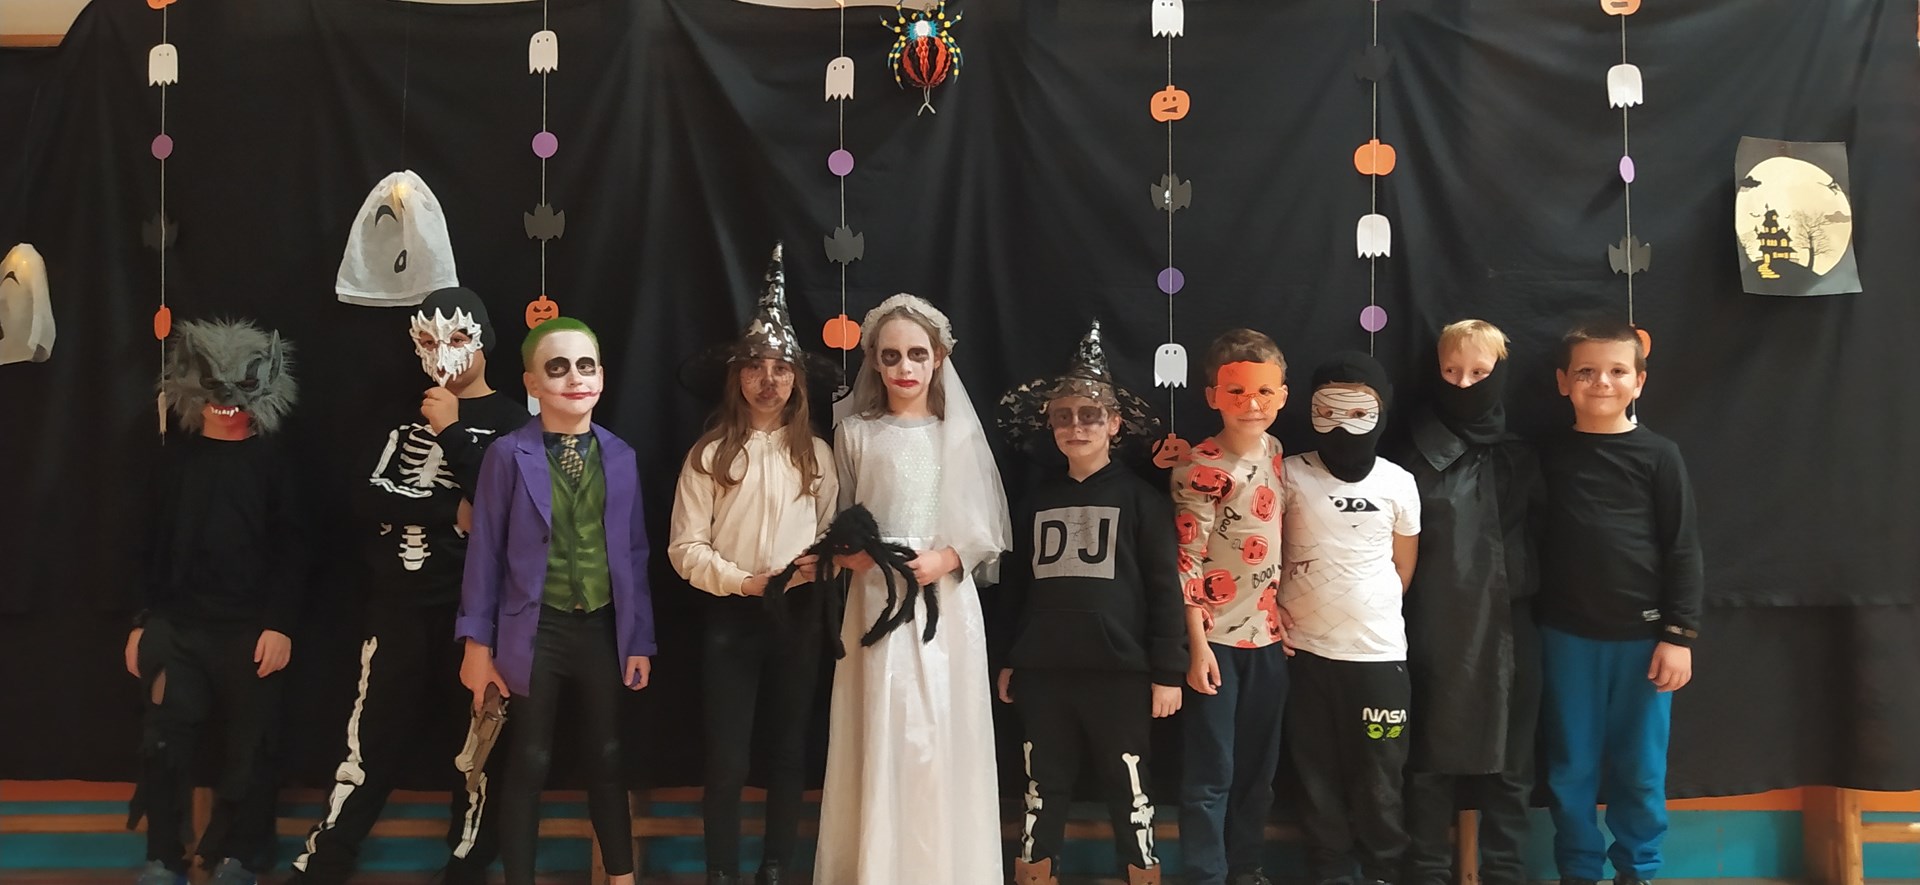 Halloweenská párty se školní družinou: zábava, odvaha a kostýmy  - zvětšit obrázek